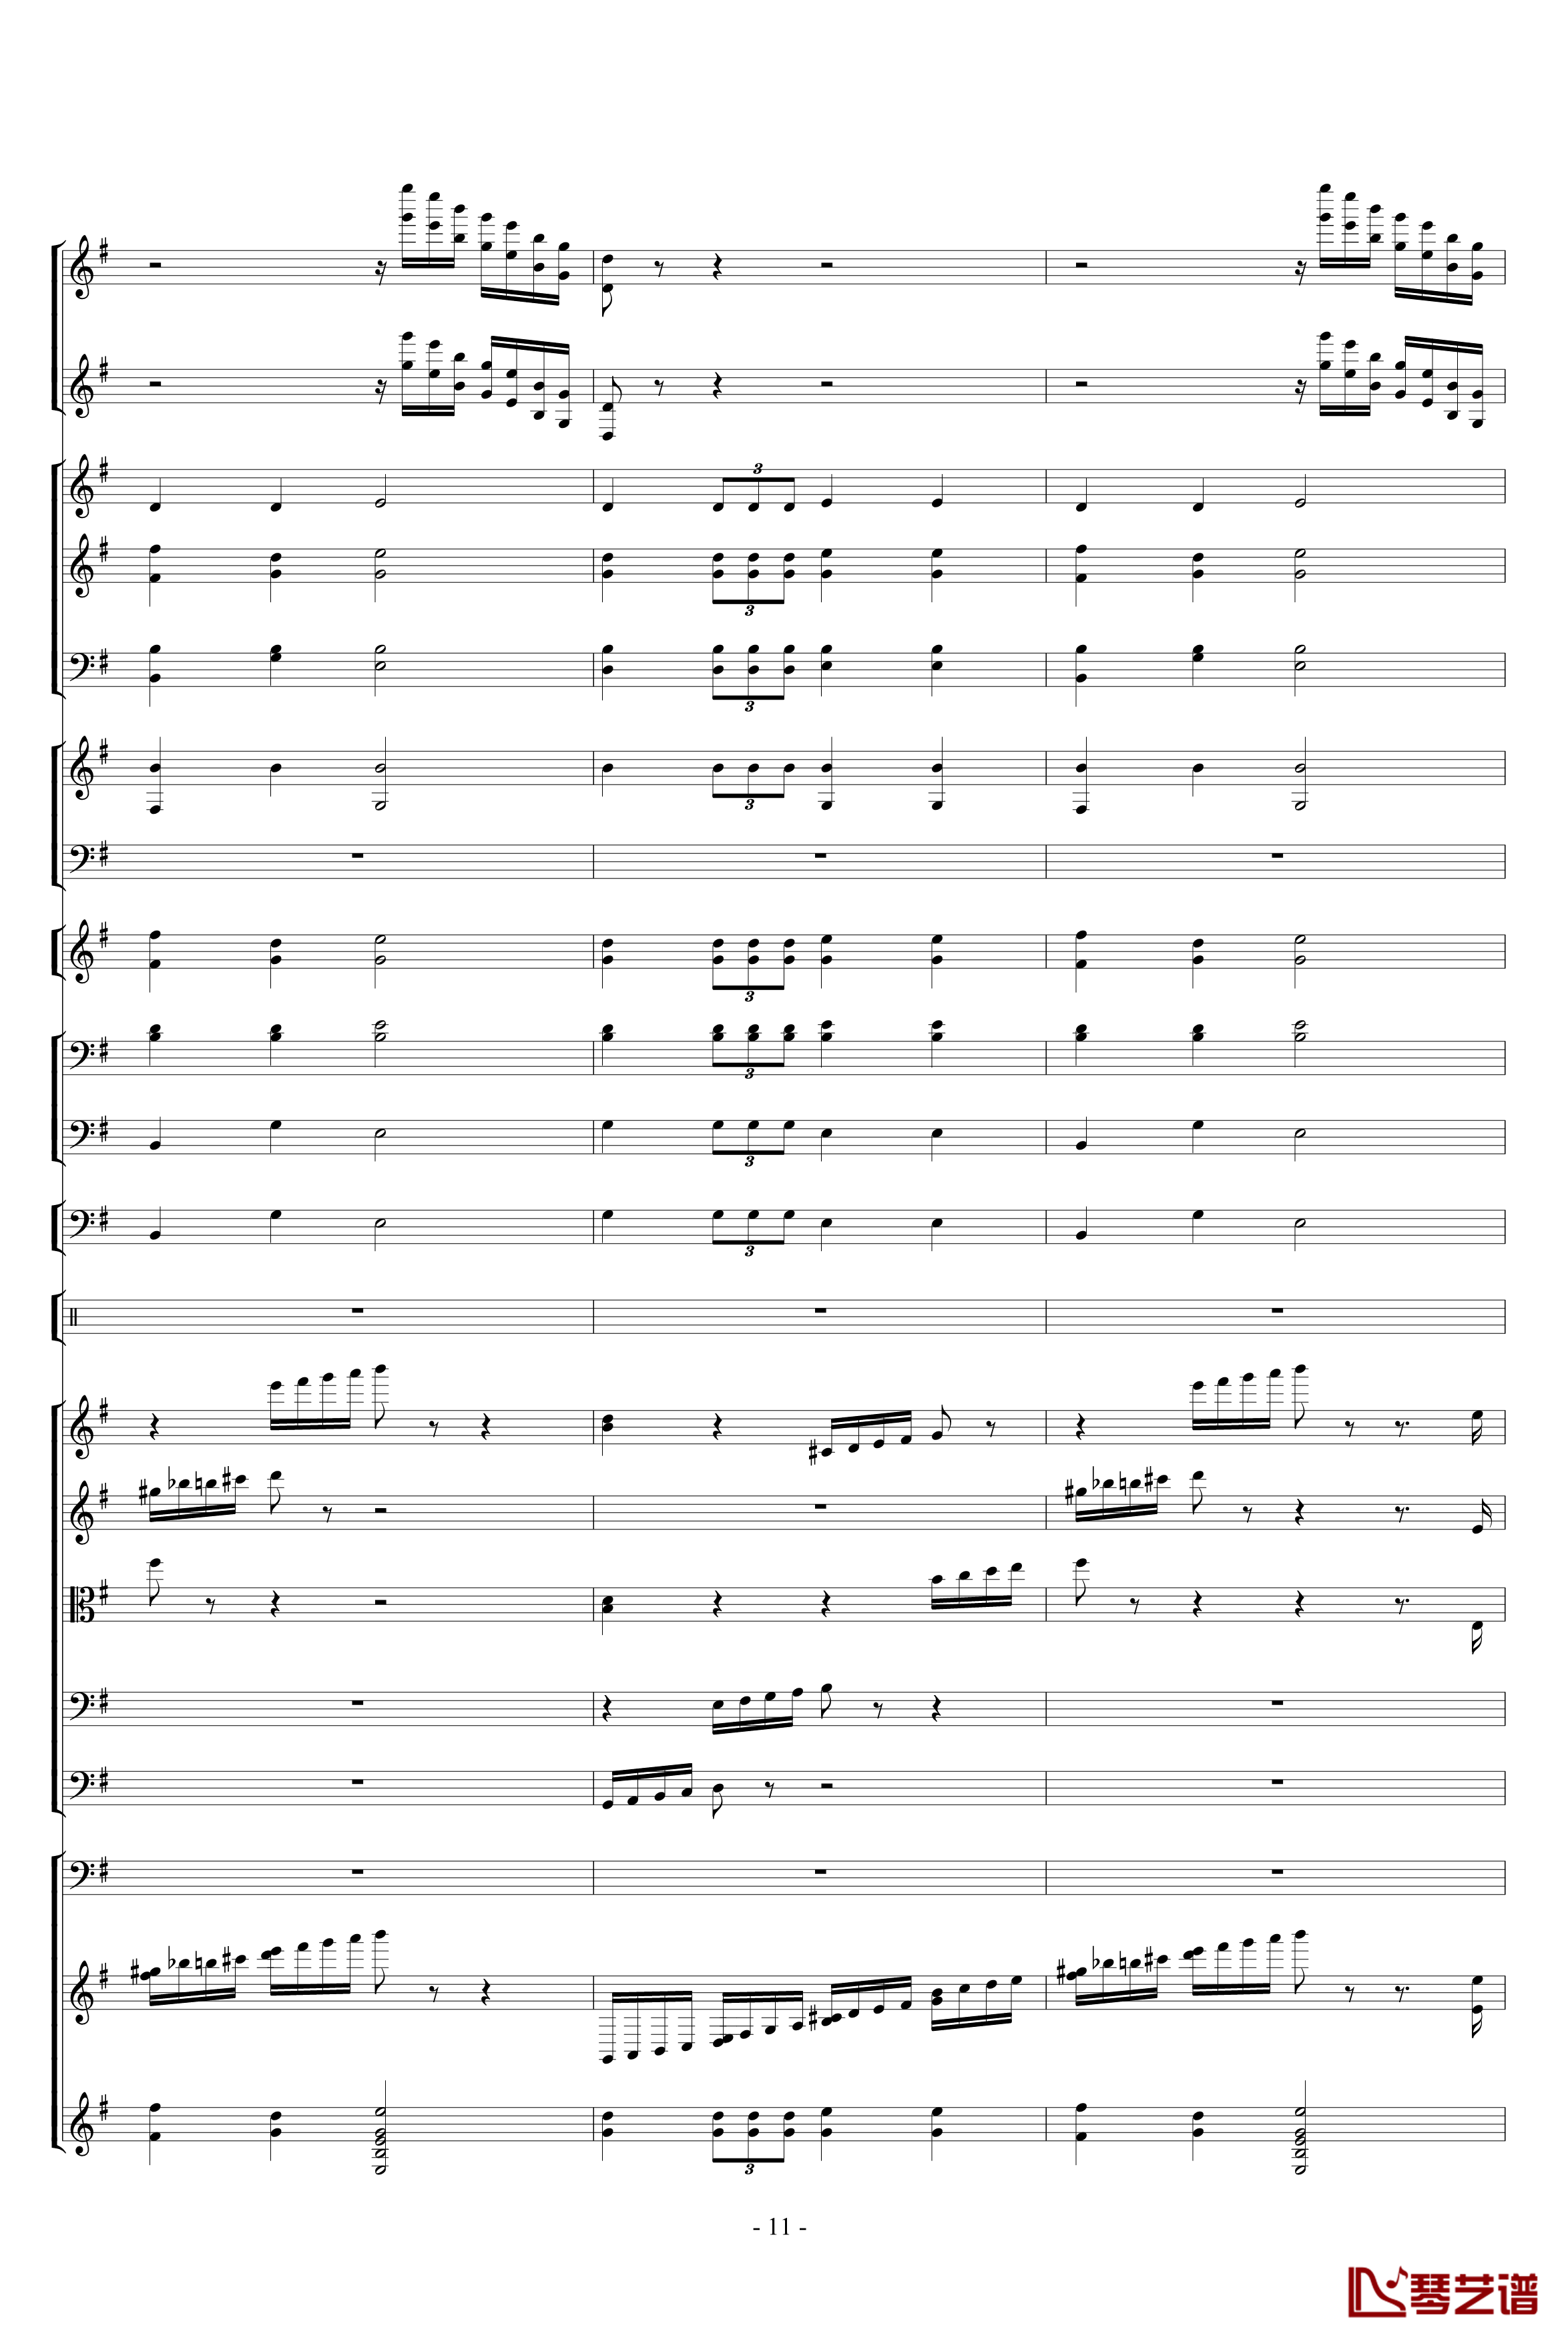 胡桃夹子组曲之进行曲钢琴谱-柴科夫斯基-Peter Ilyich Tchaikovsky11